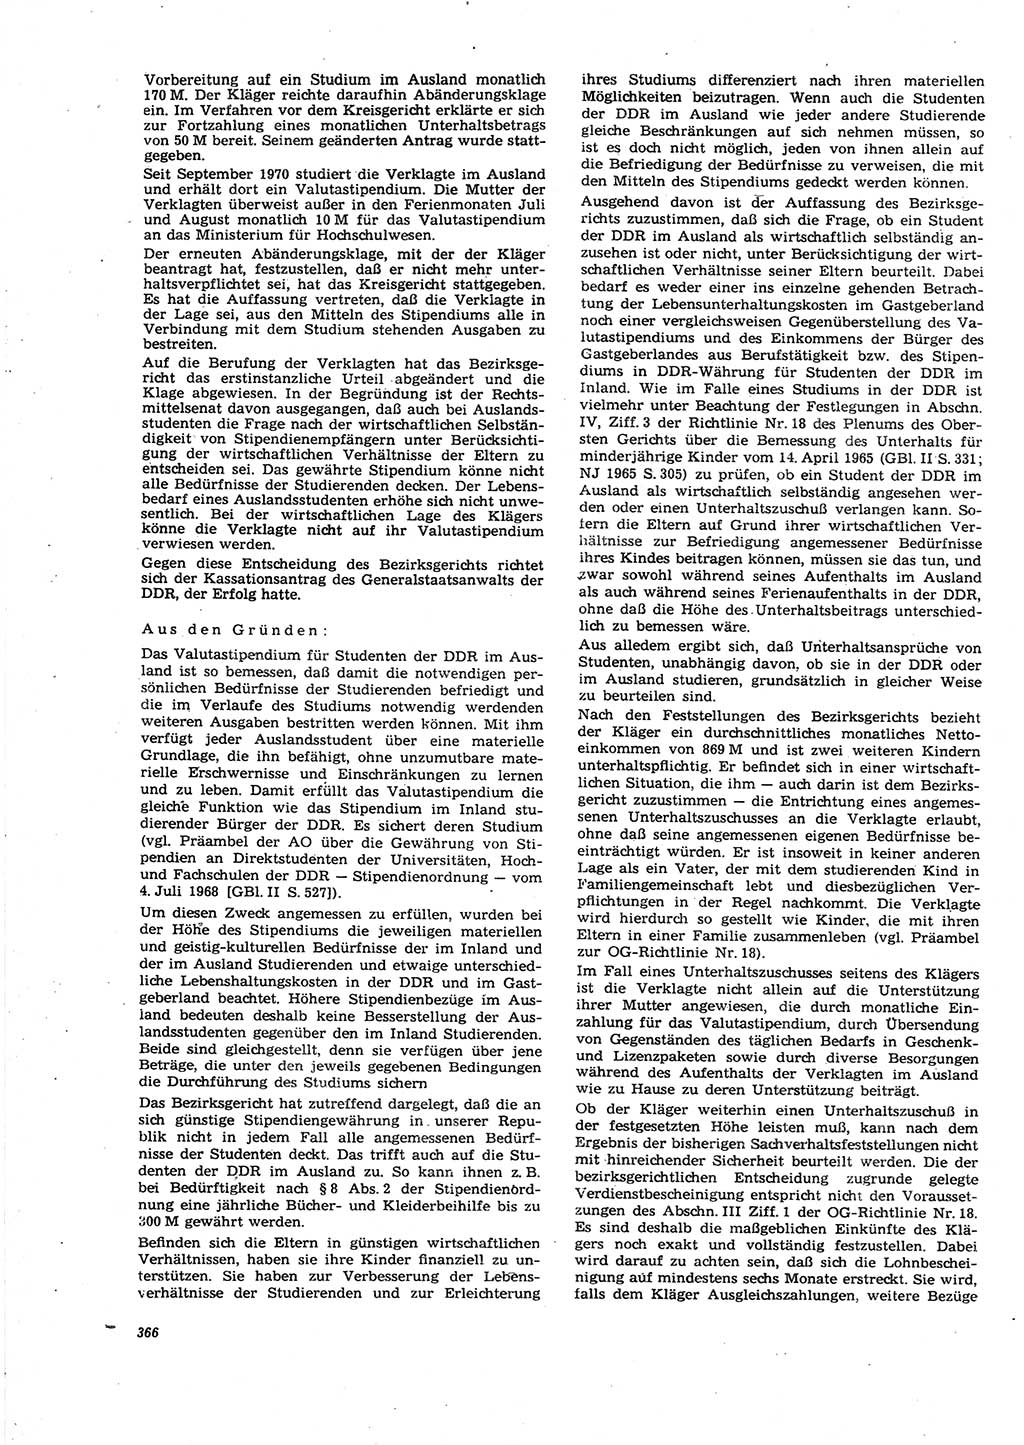 Neue Justiz (NJ), Zeitschrift für Recht und Rechtswissenschaft [Deutsche Demokratische Republik (DDR)], 27. Jahrgang 1973, Seite 366 (NJ DDR 1973, S. 366)